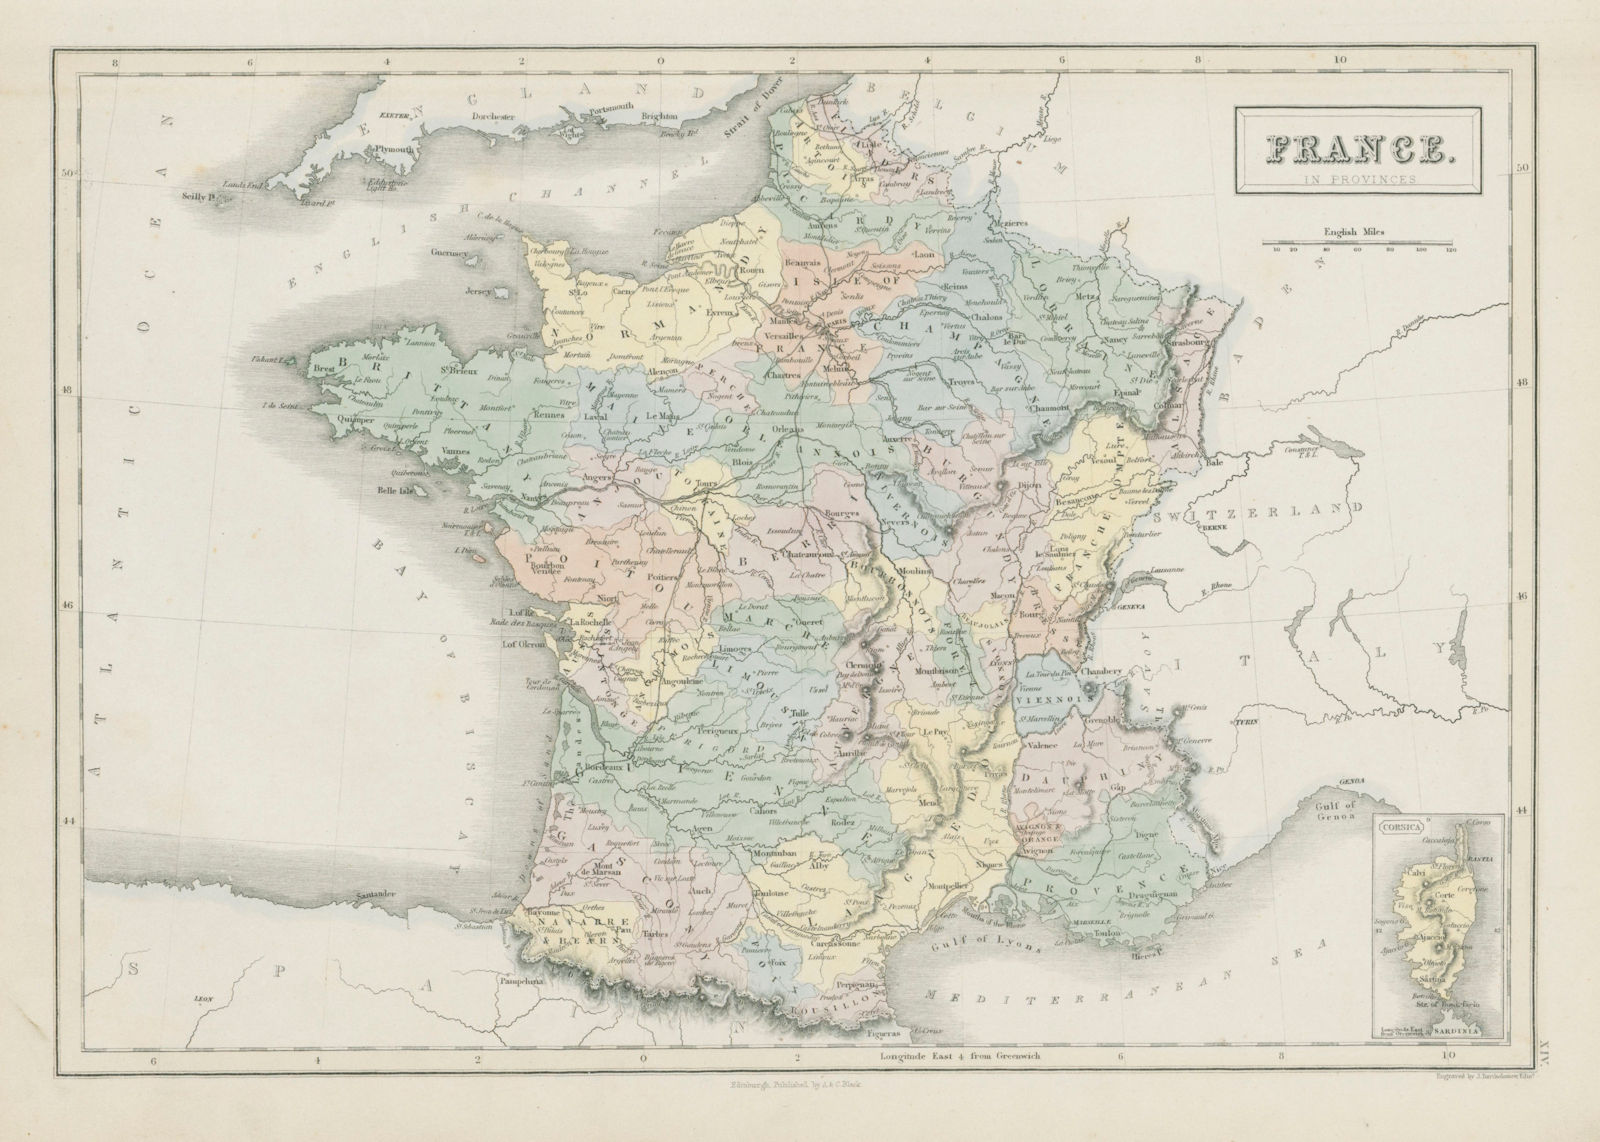 France in provinces showing railways. JOHN BARTHOLOMEW 1856 old antique map